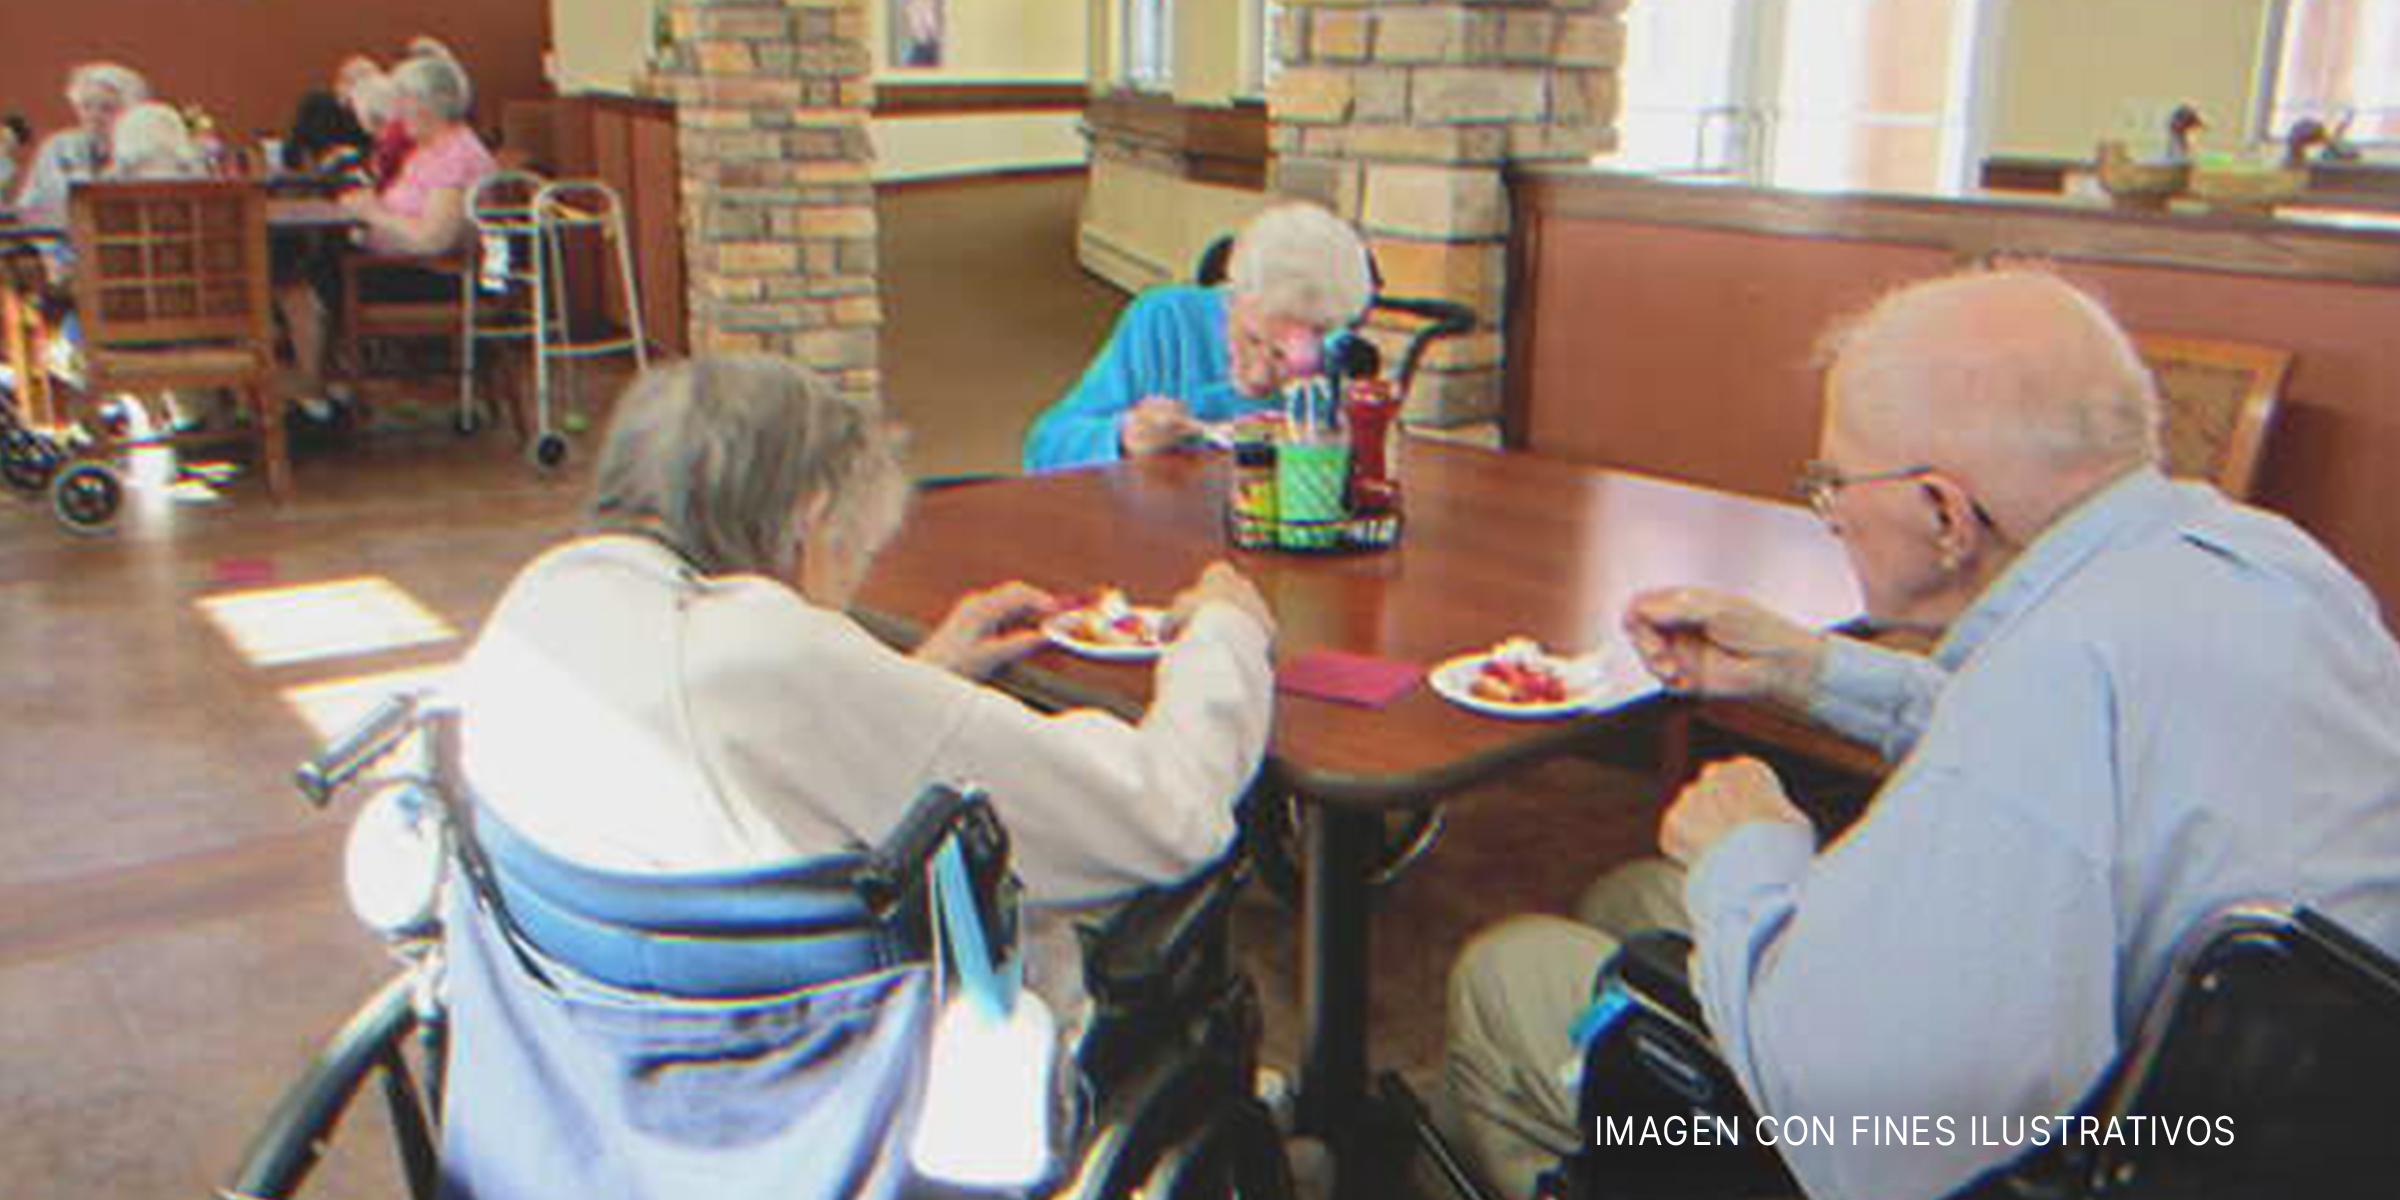 Ancianos en una residencia. | Foto: flickr.com/cezzie901 (CC BY 2.0)